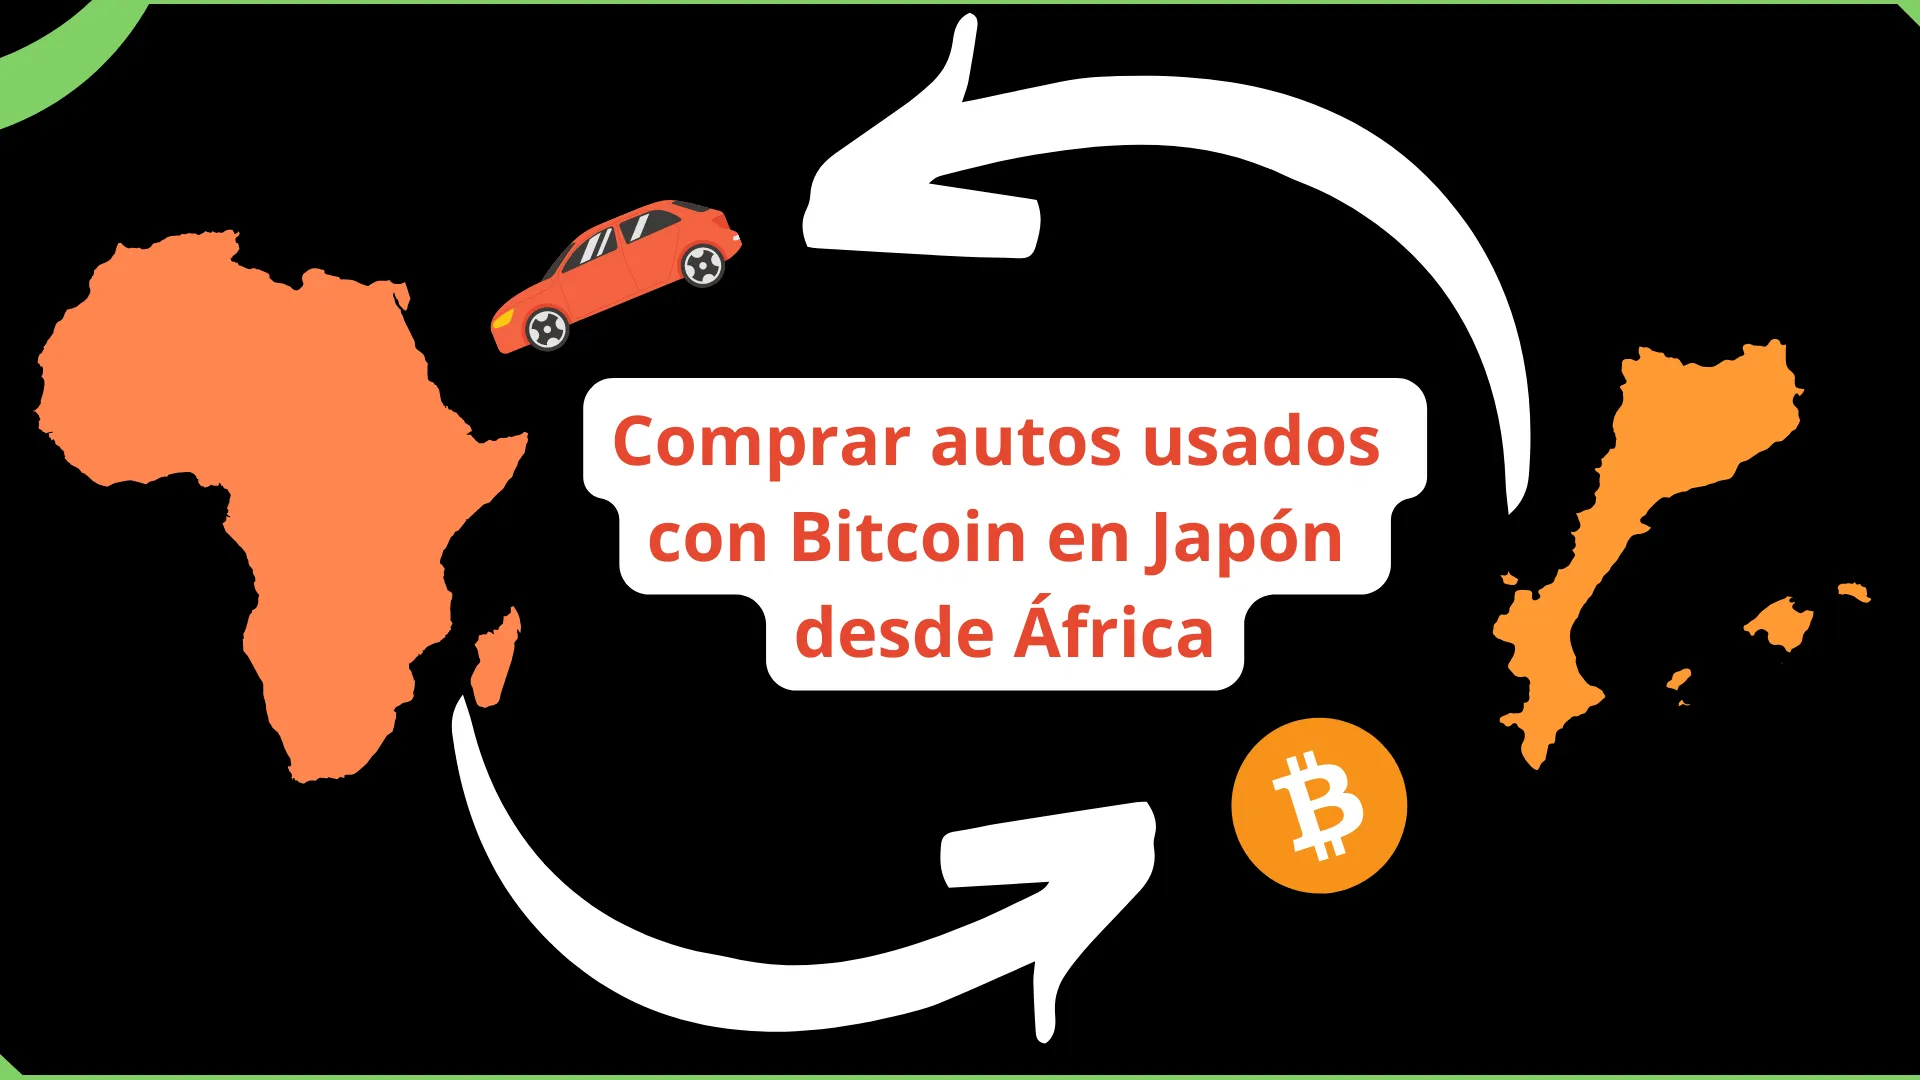 Cómo comprar autos usados con Bitcoin en Japón desde África